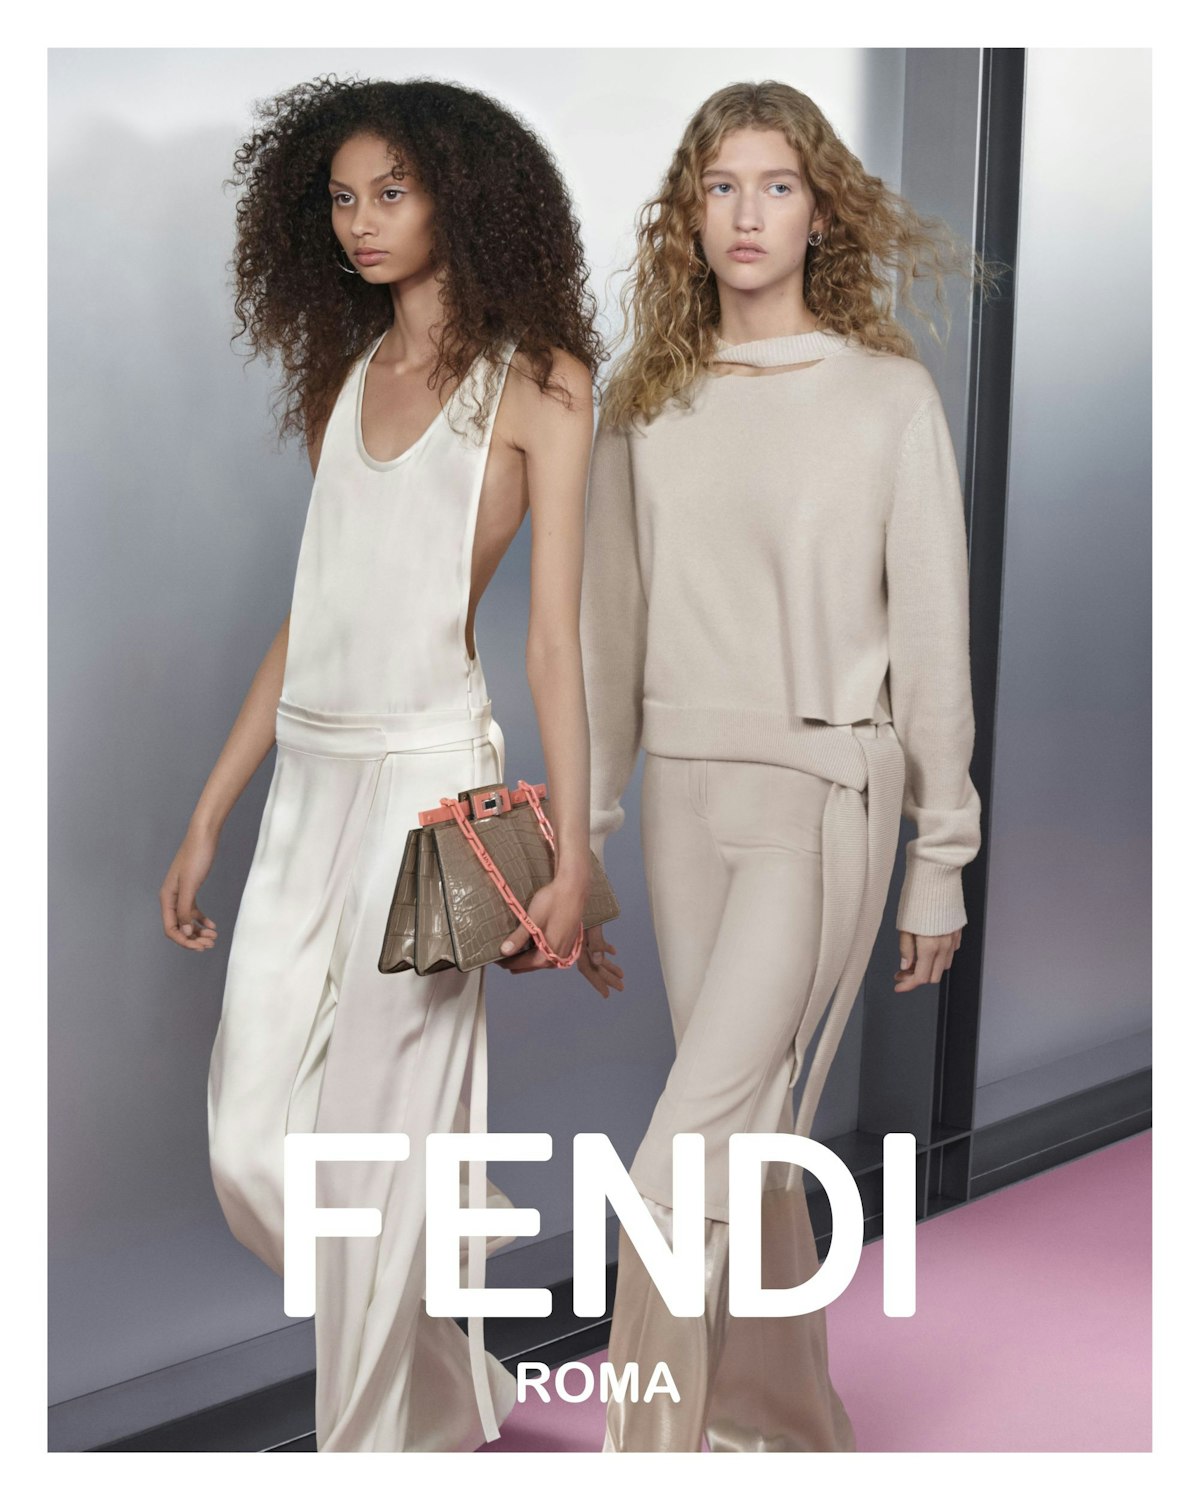 Fendi Spring 2021 Ad Campaign